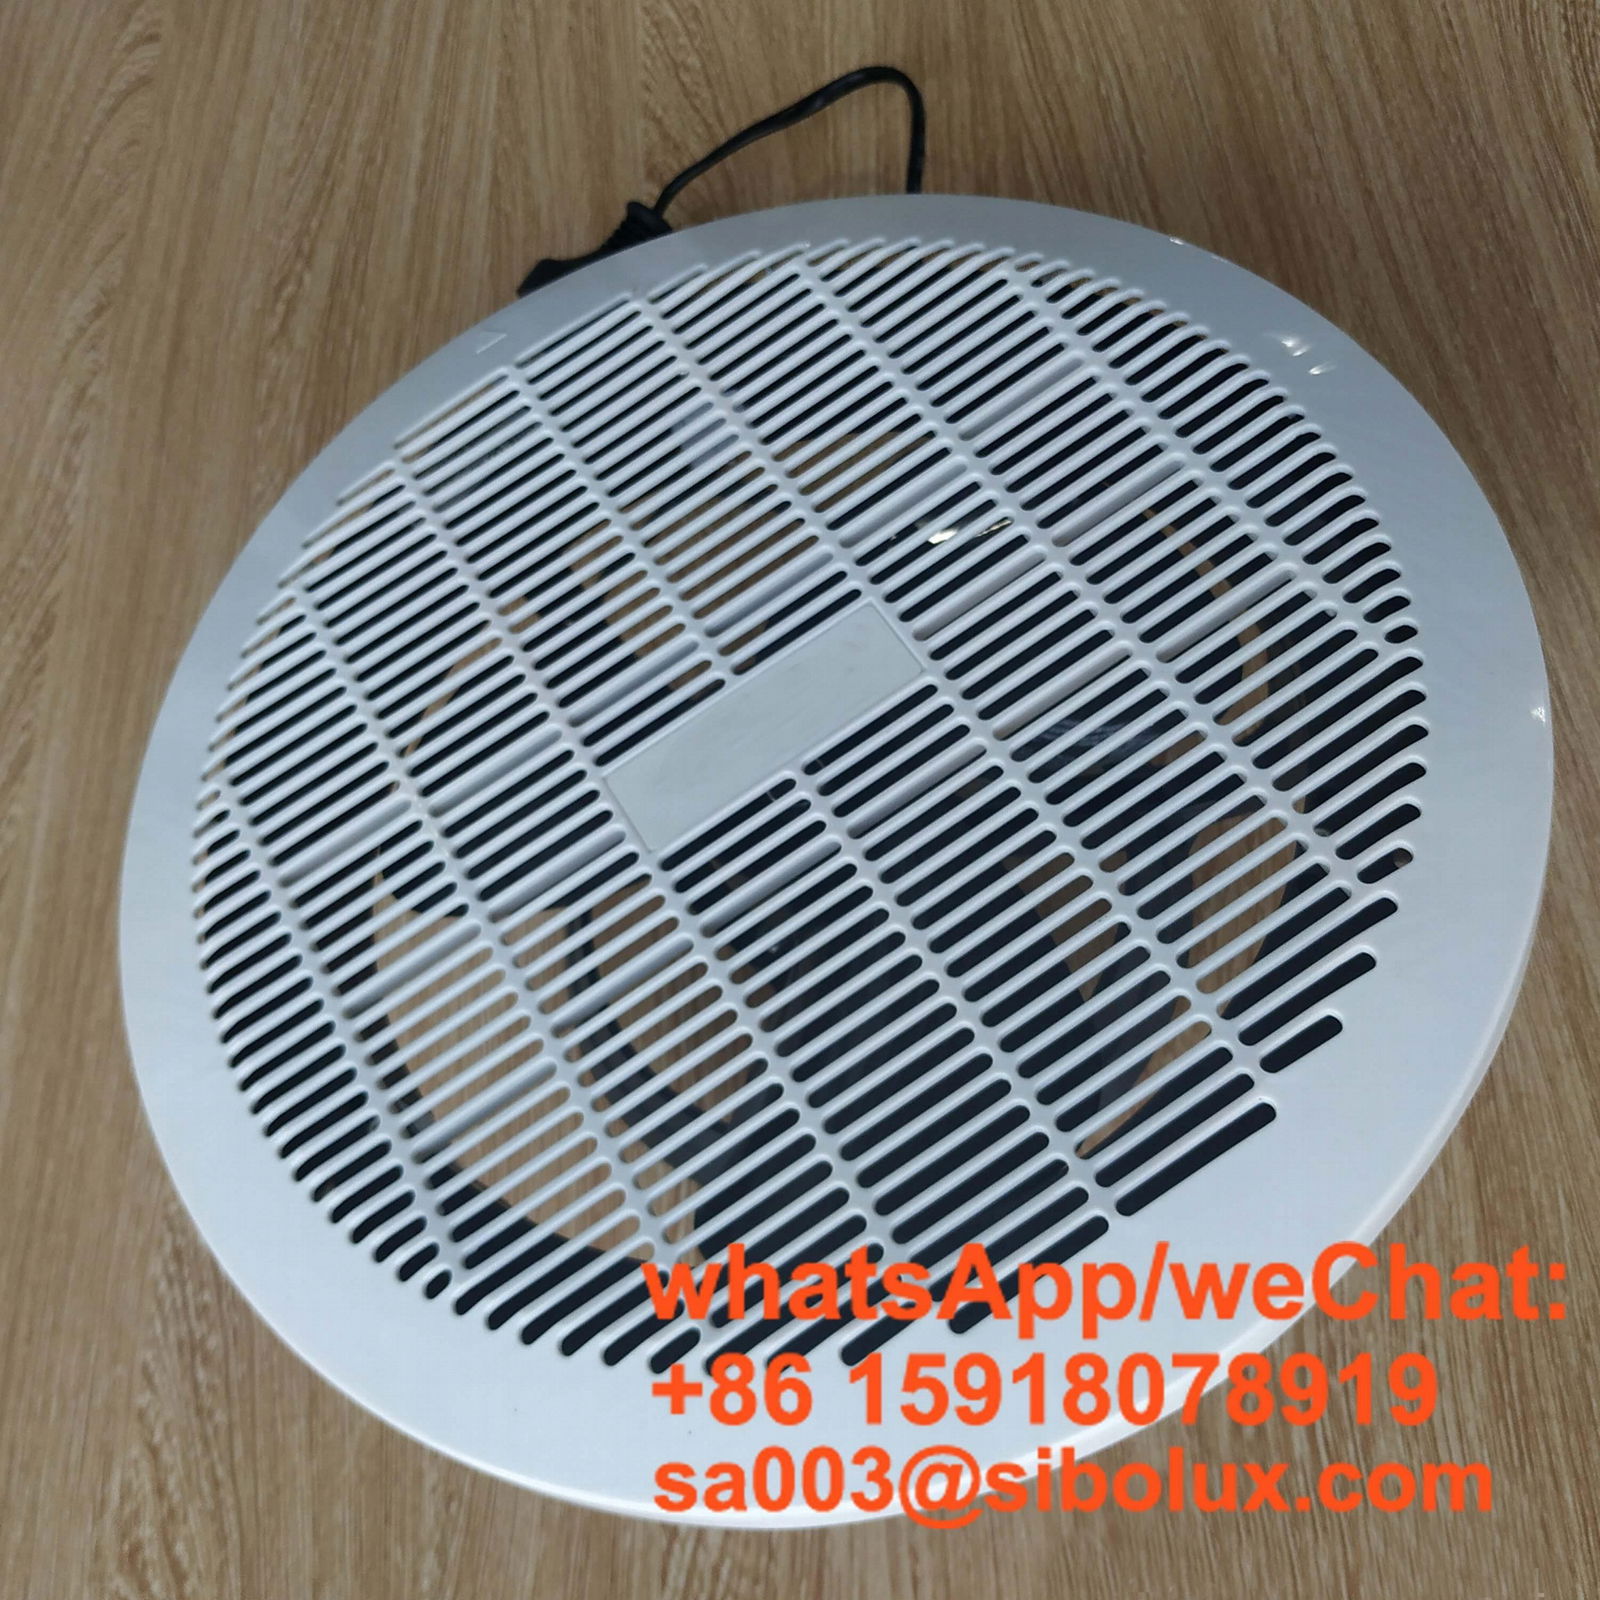 8" 10 inch ceiling fan Exhaust window Fans for bathroom Kitchen Toilet 2